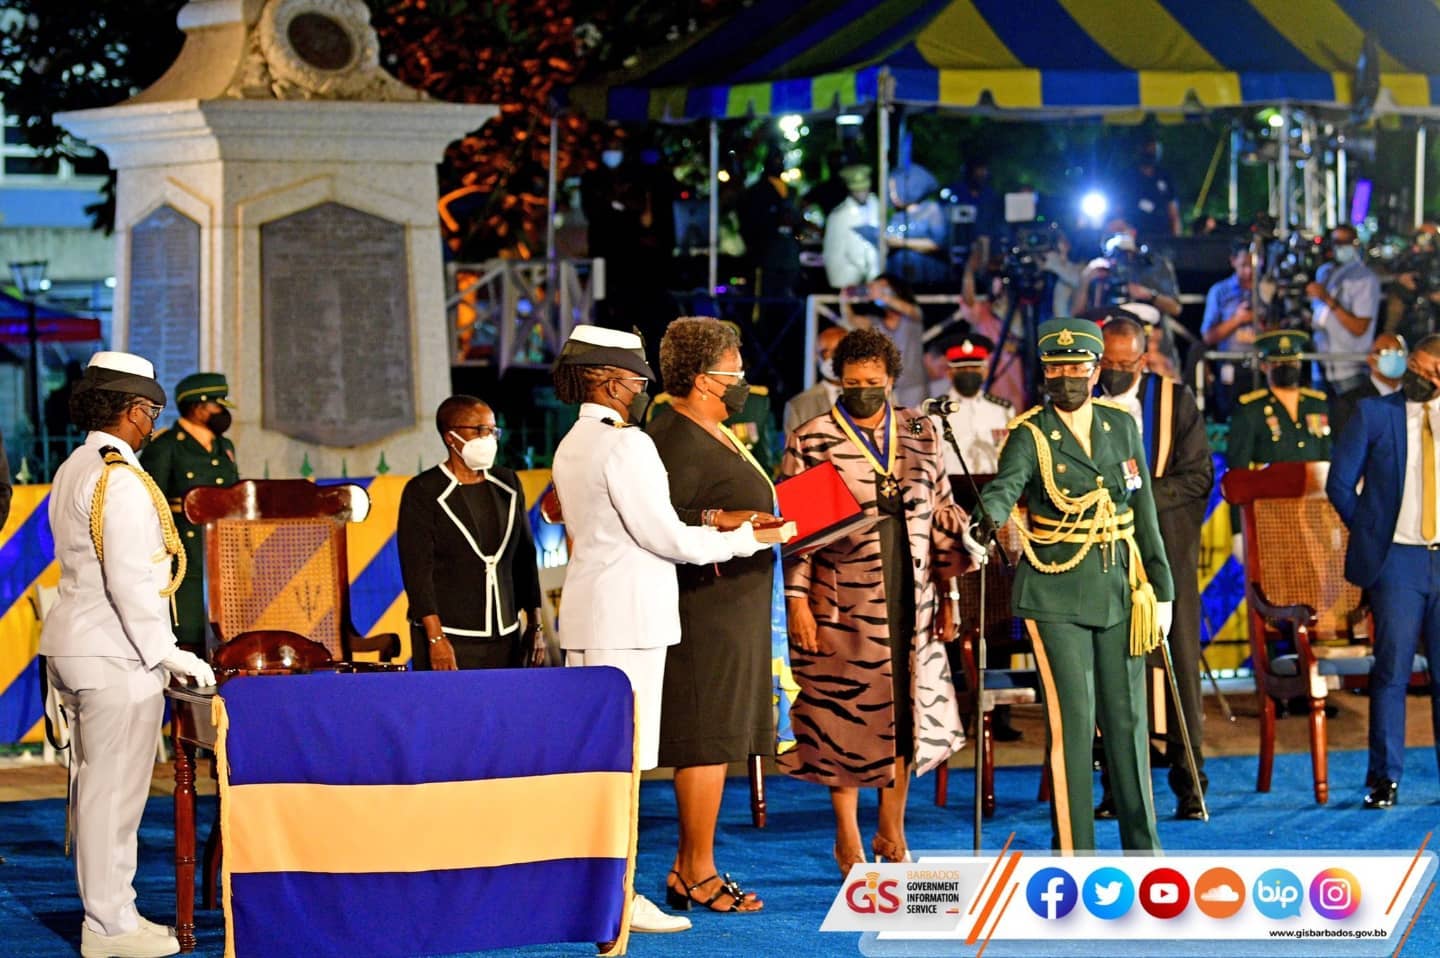     Barbade proclame sa République et se détache de la couronne britannique

